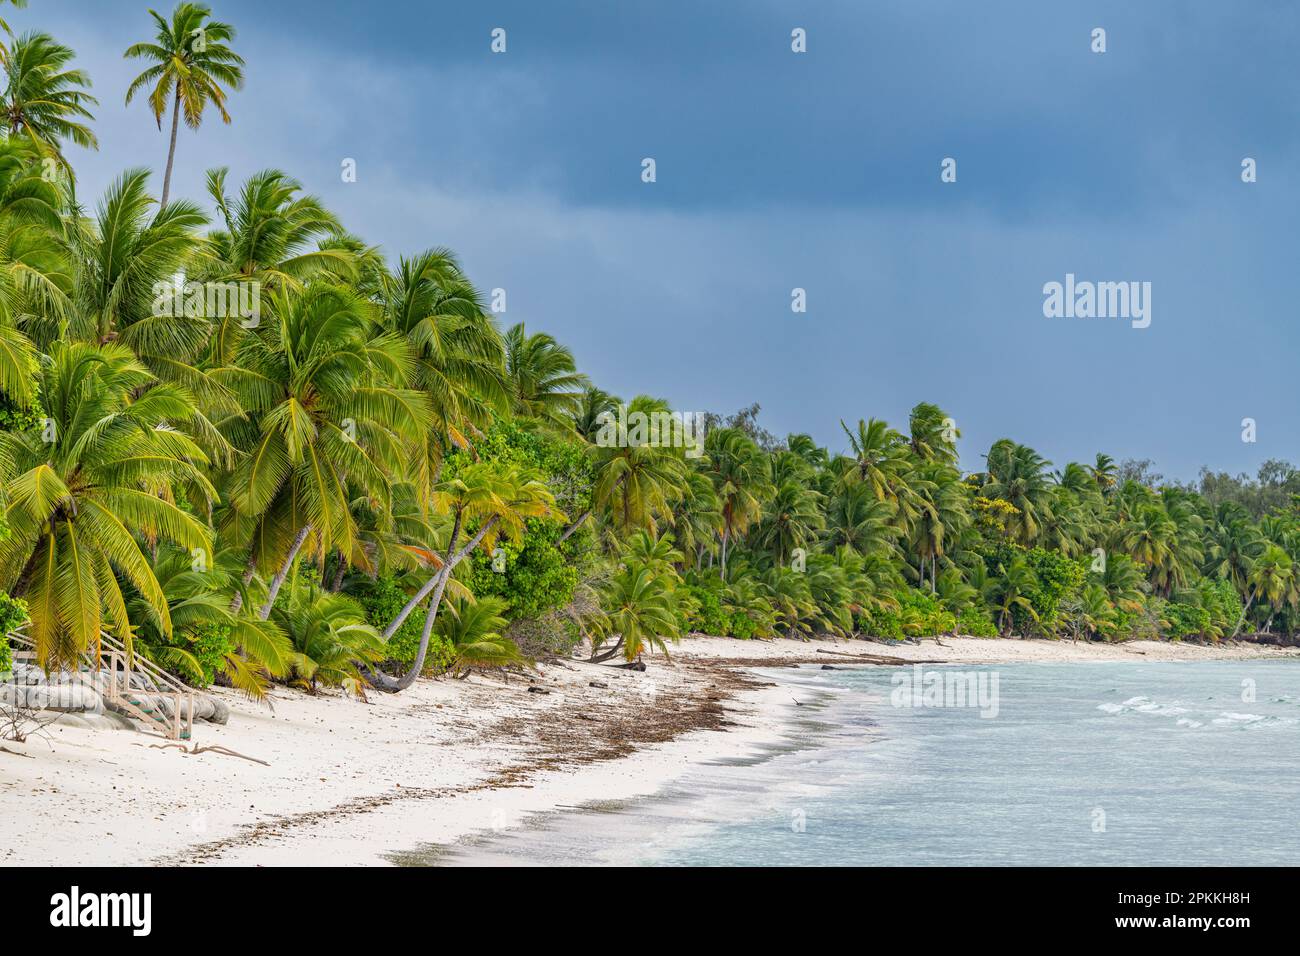 Plage de sable blanc, Western Island, îles Cocos (Keeling), territoire australien de l'océan Indien, Australie, Océan Indien Banque D'Images